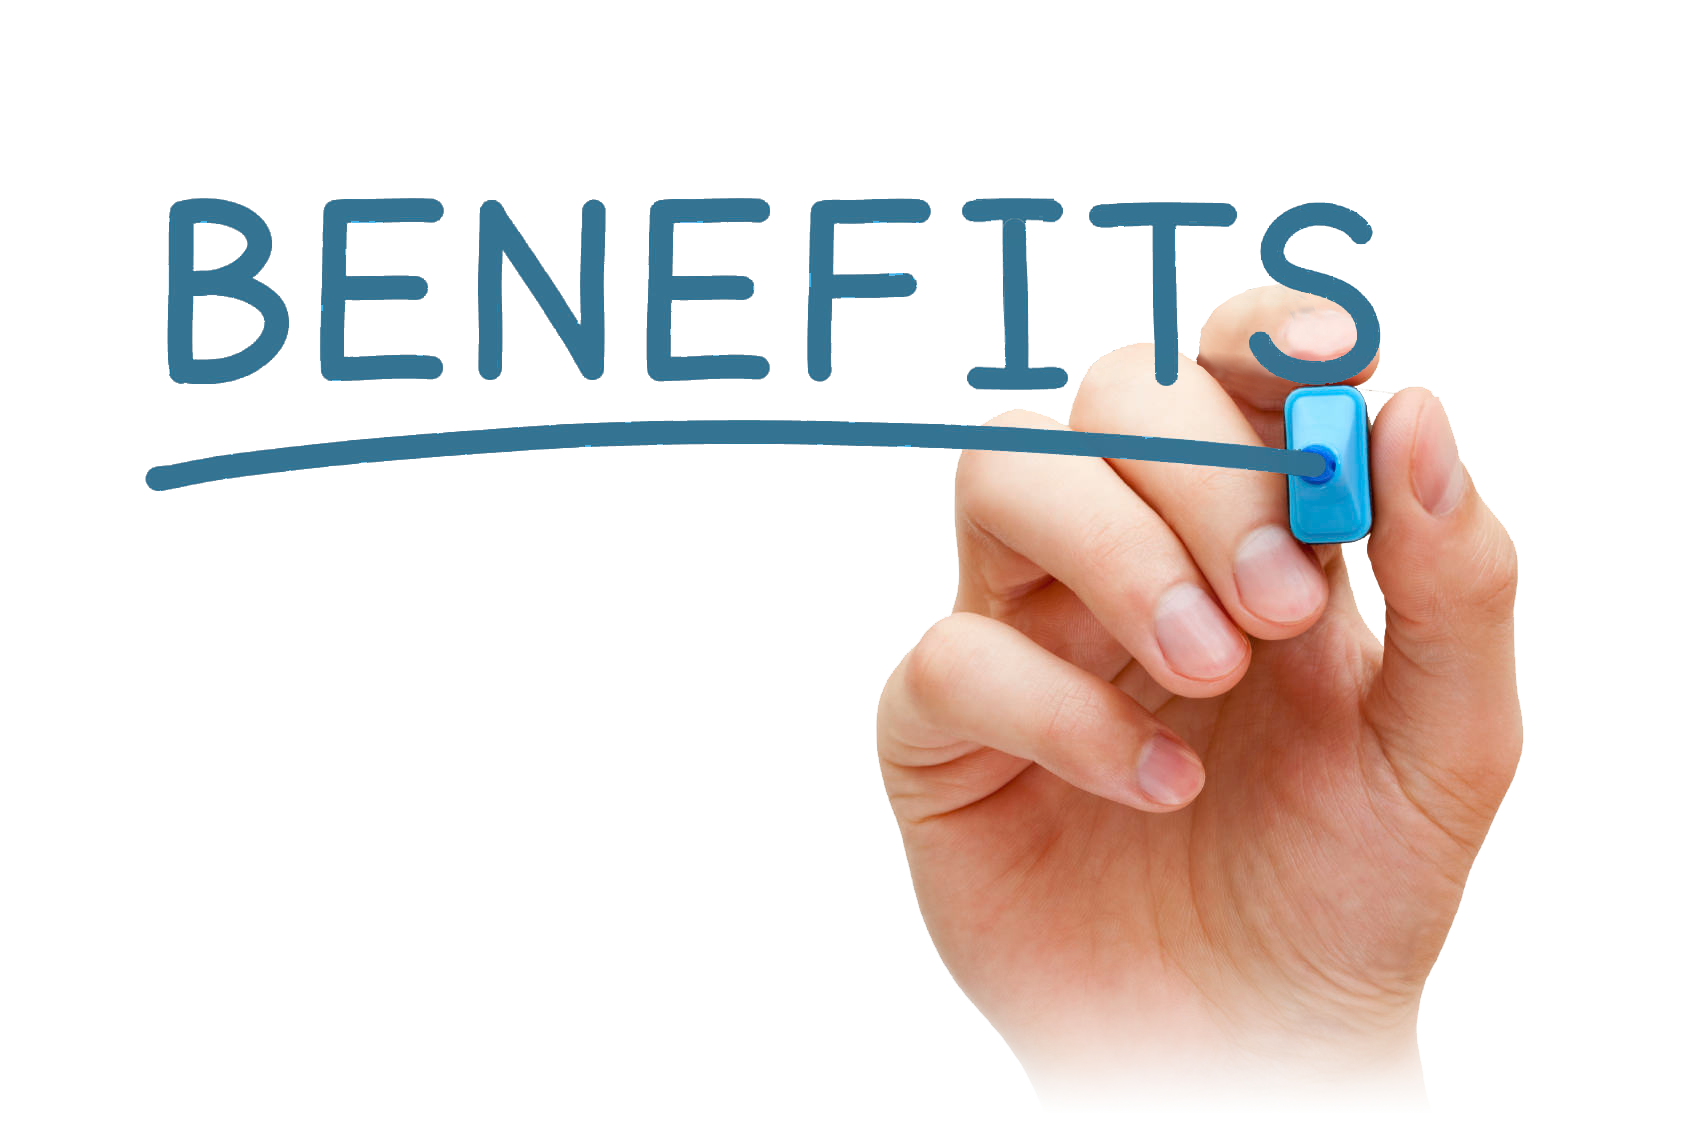 Benefits. Benefit картинка. Иконка бенефиты. Бенефиты для сотрудников. Bring benefit